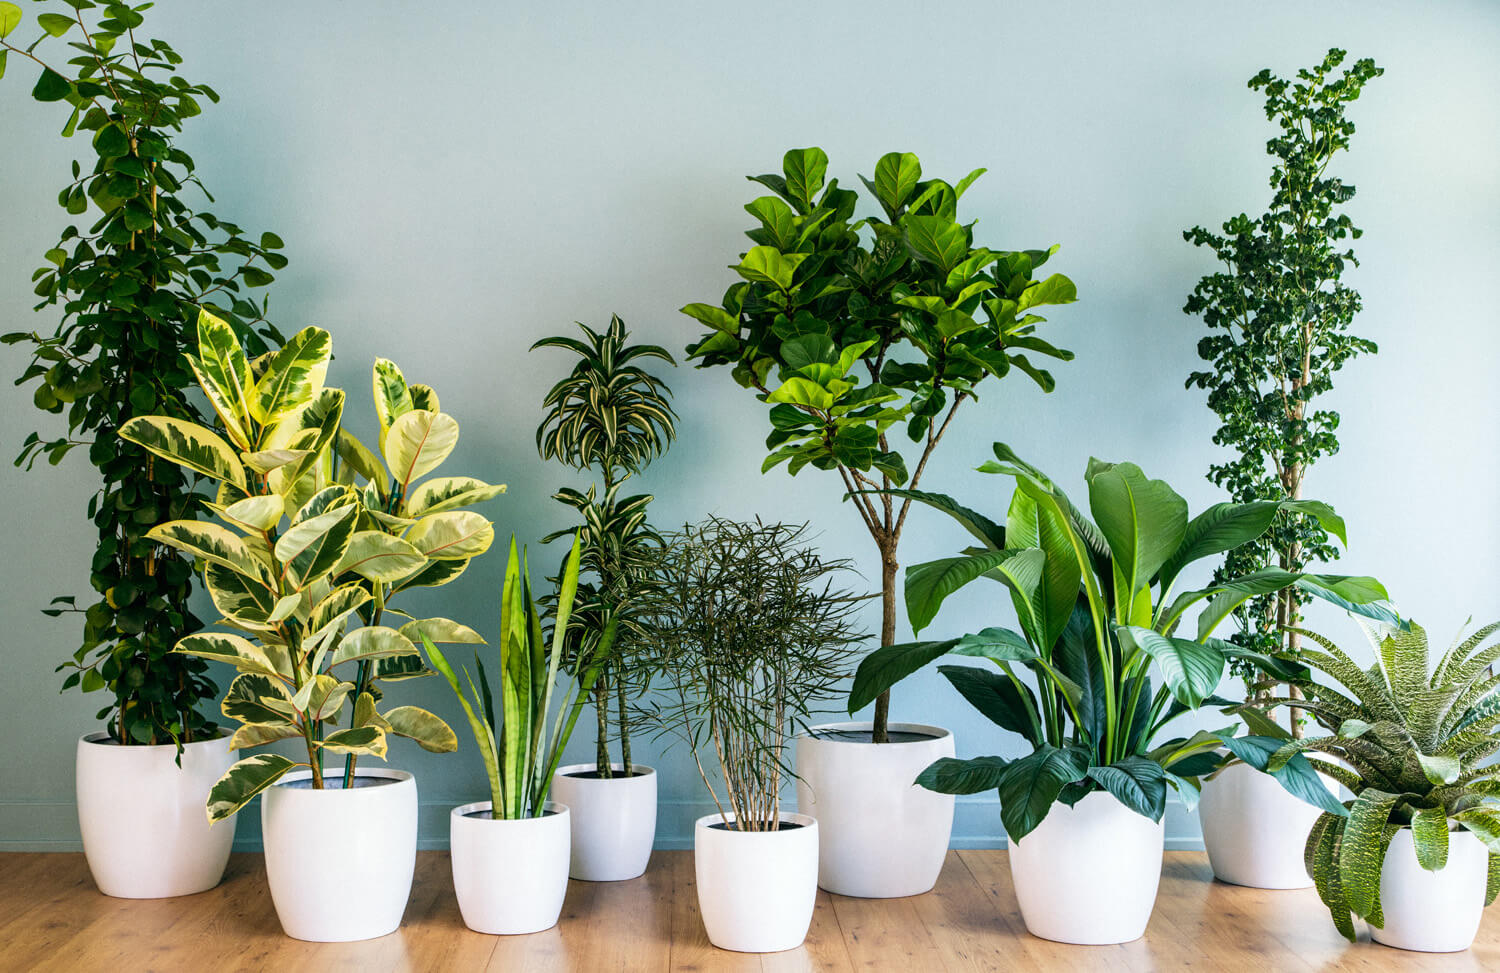 اصول مهم نگهداری از گیاهان آپارتمانی